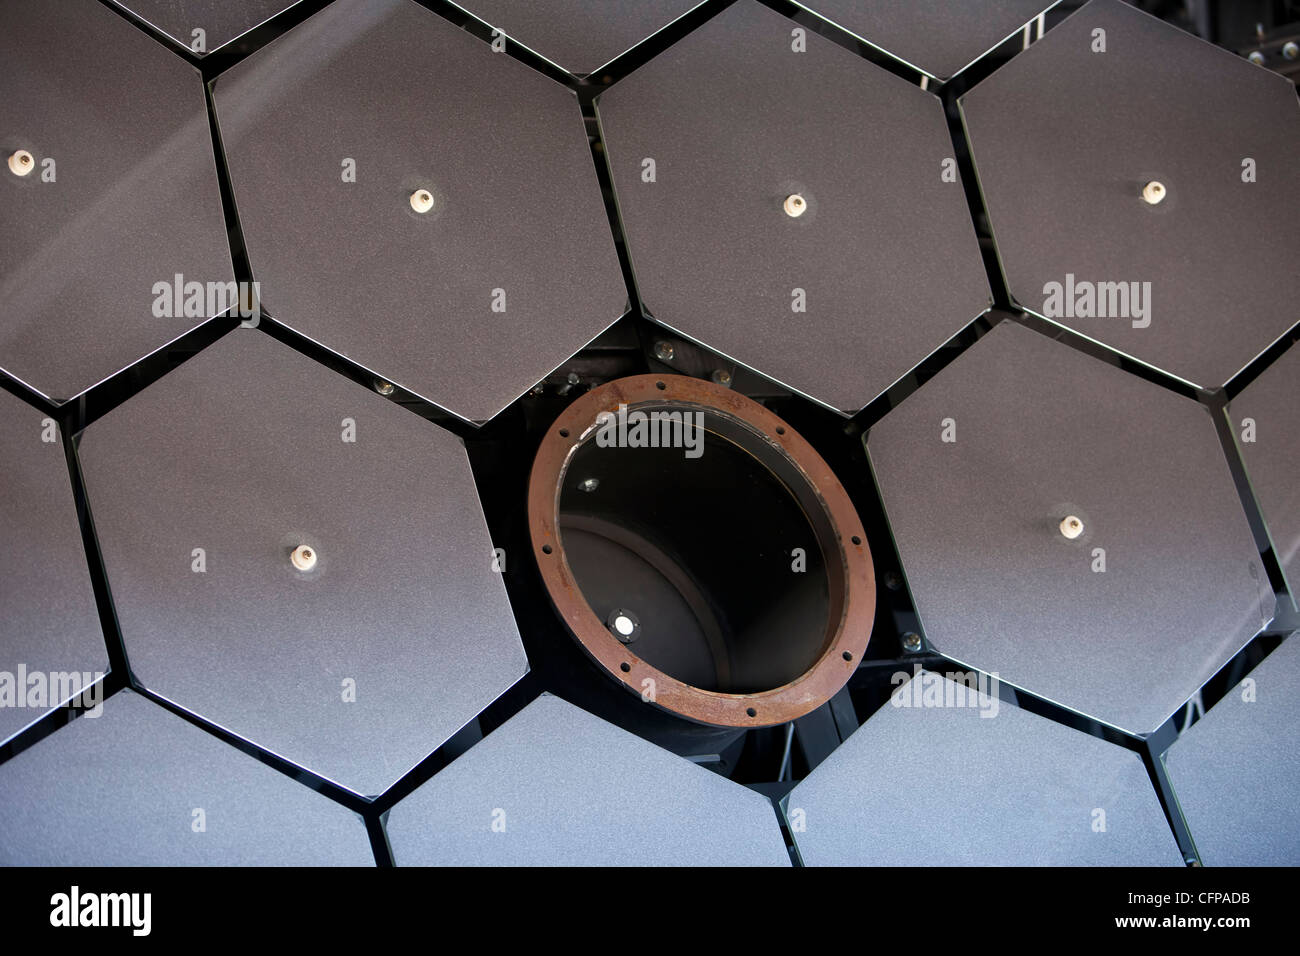 Kosmischer Strahl-Fluoreszenz-Detektoren reflektierenden Spiegel Array wissenschaftliches Observatorium elektronische Geräte. Stockfoto